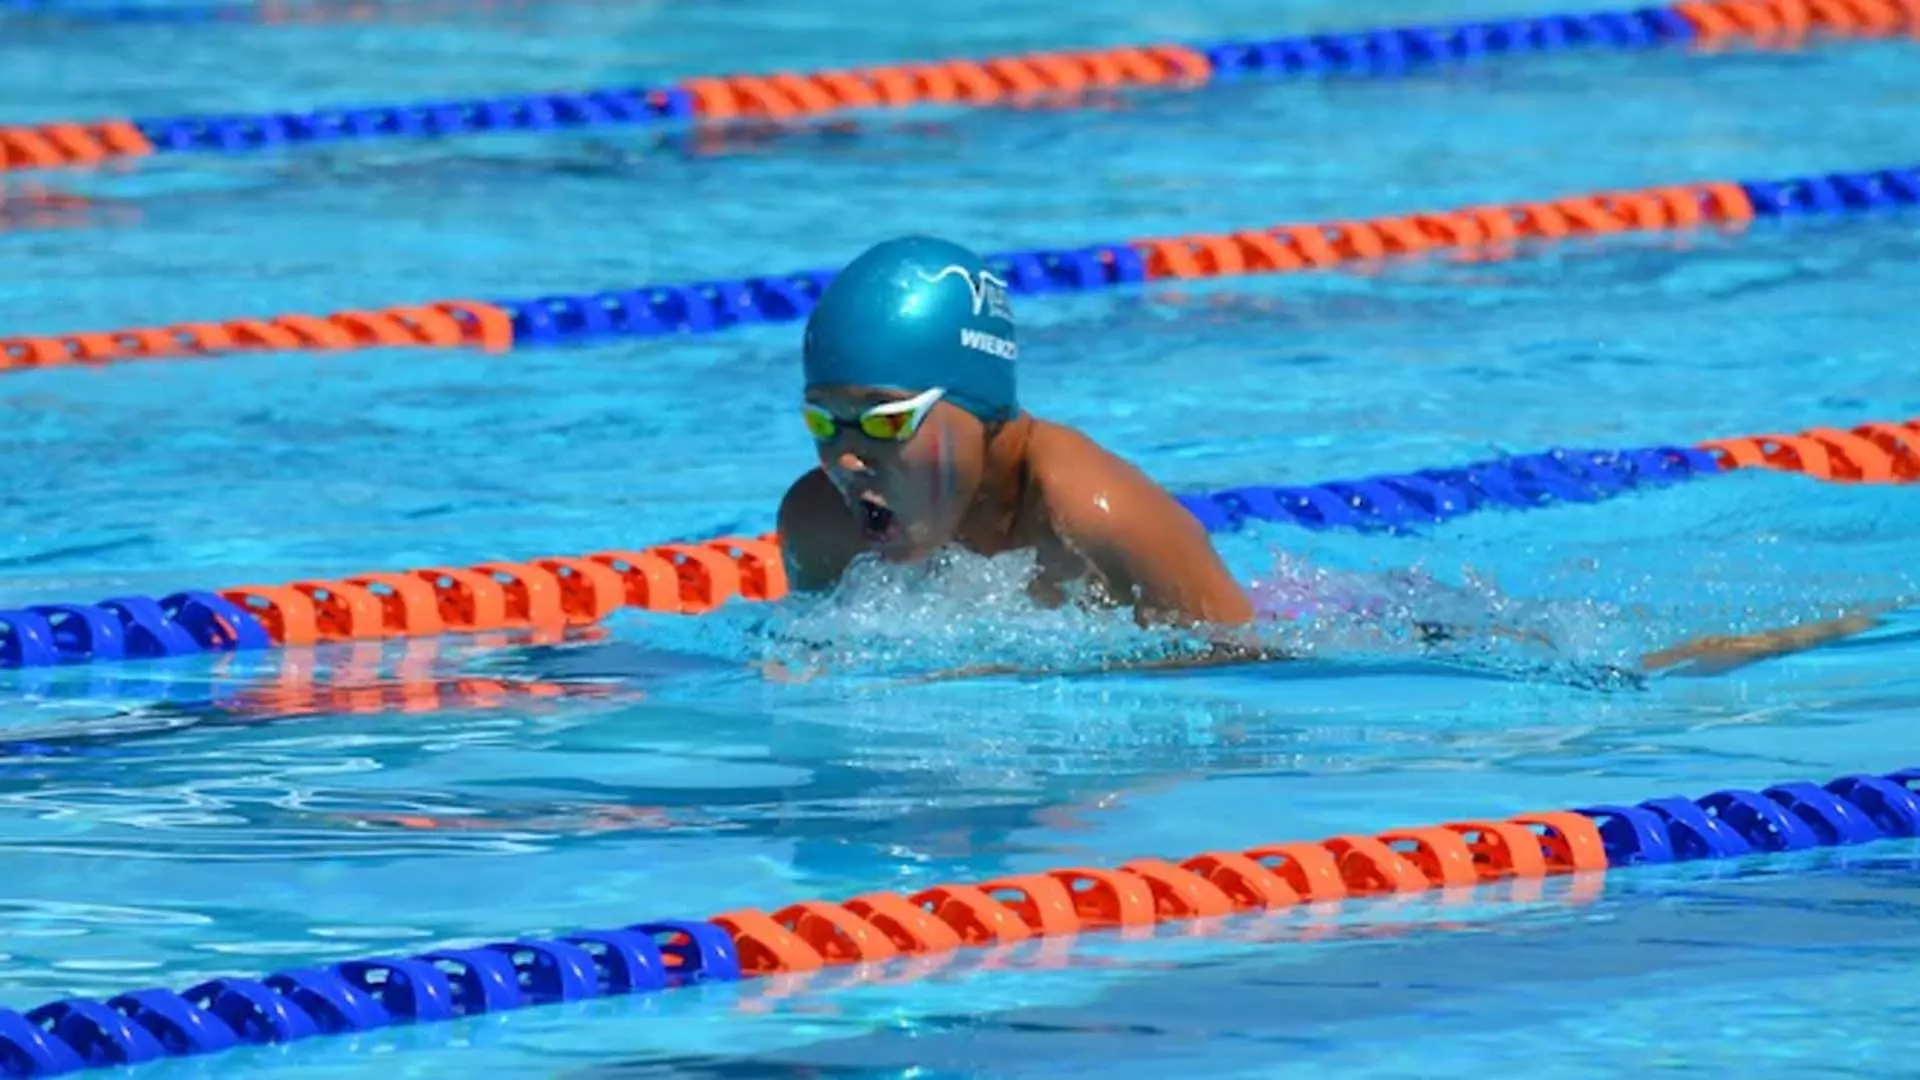 16 वर्षीय जिया राय इंग्लिश चैनल पार करने वाली सबसे कम उम्र की पैरा तैराक बनीं